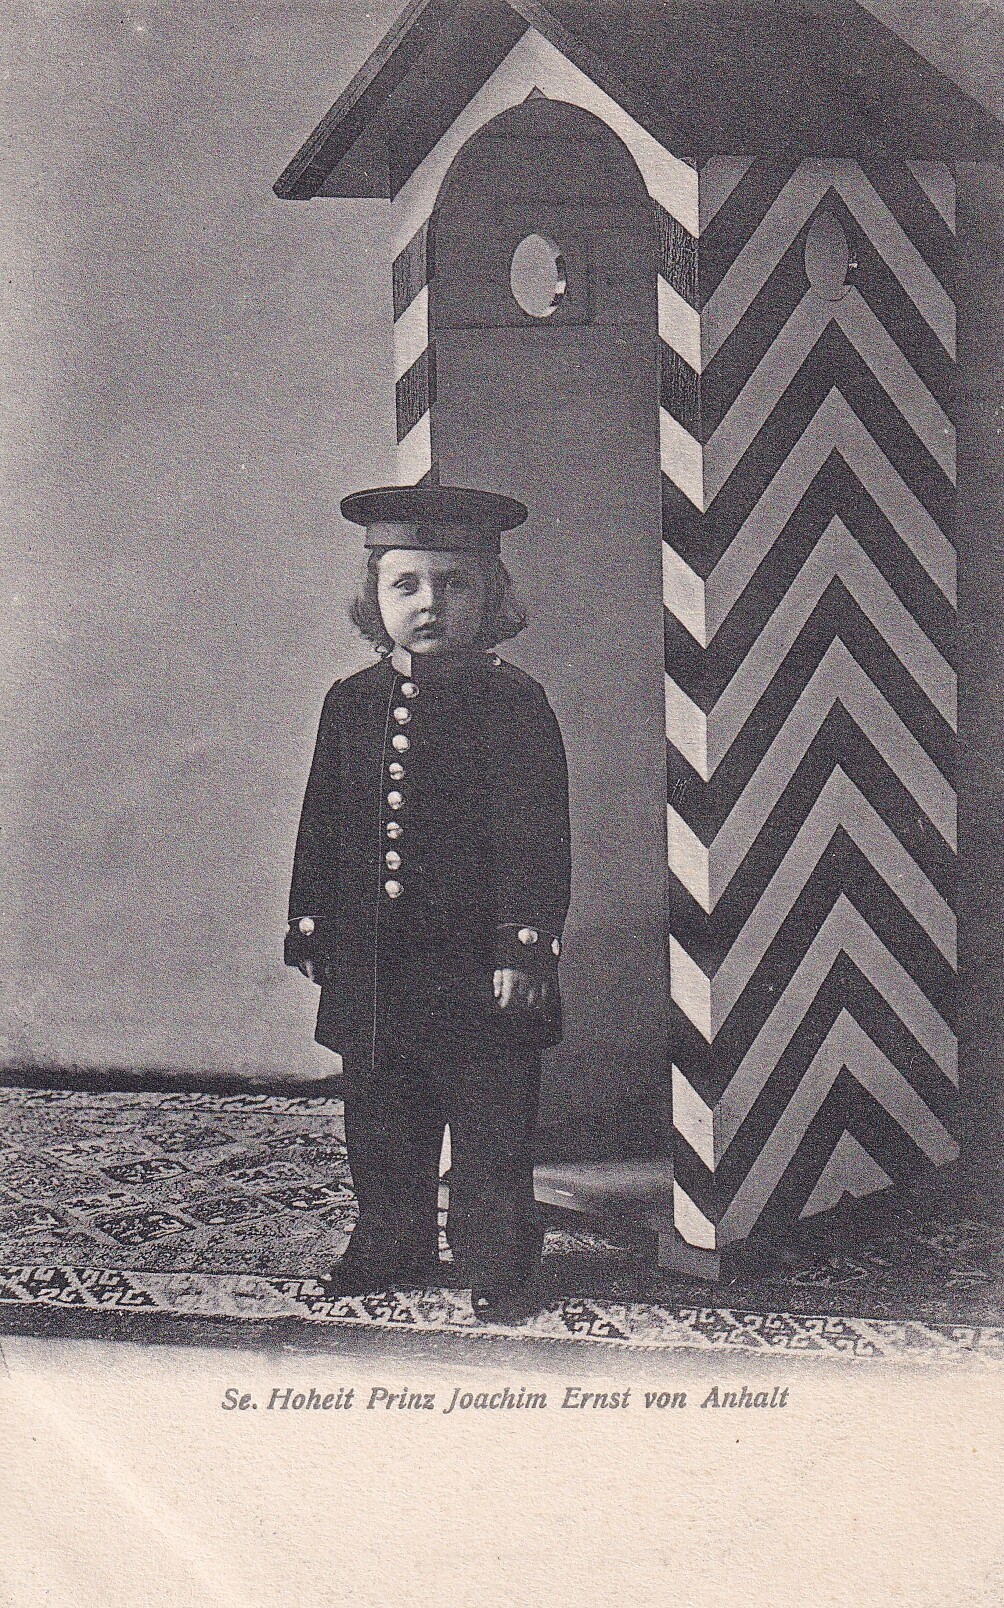 Bildpostkarte mit Foto des Prinzen Joachim Ernst von Anhalt, um 1905 (Schloß Wernigerode GmbH RR-F)